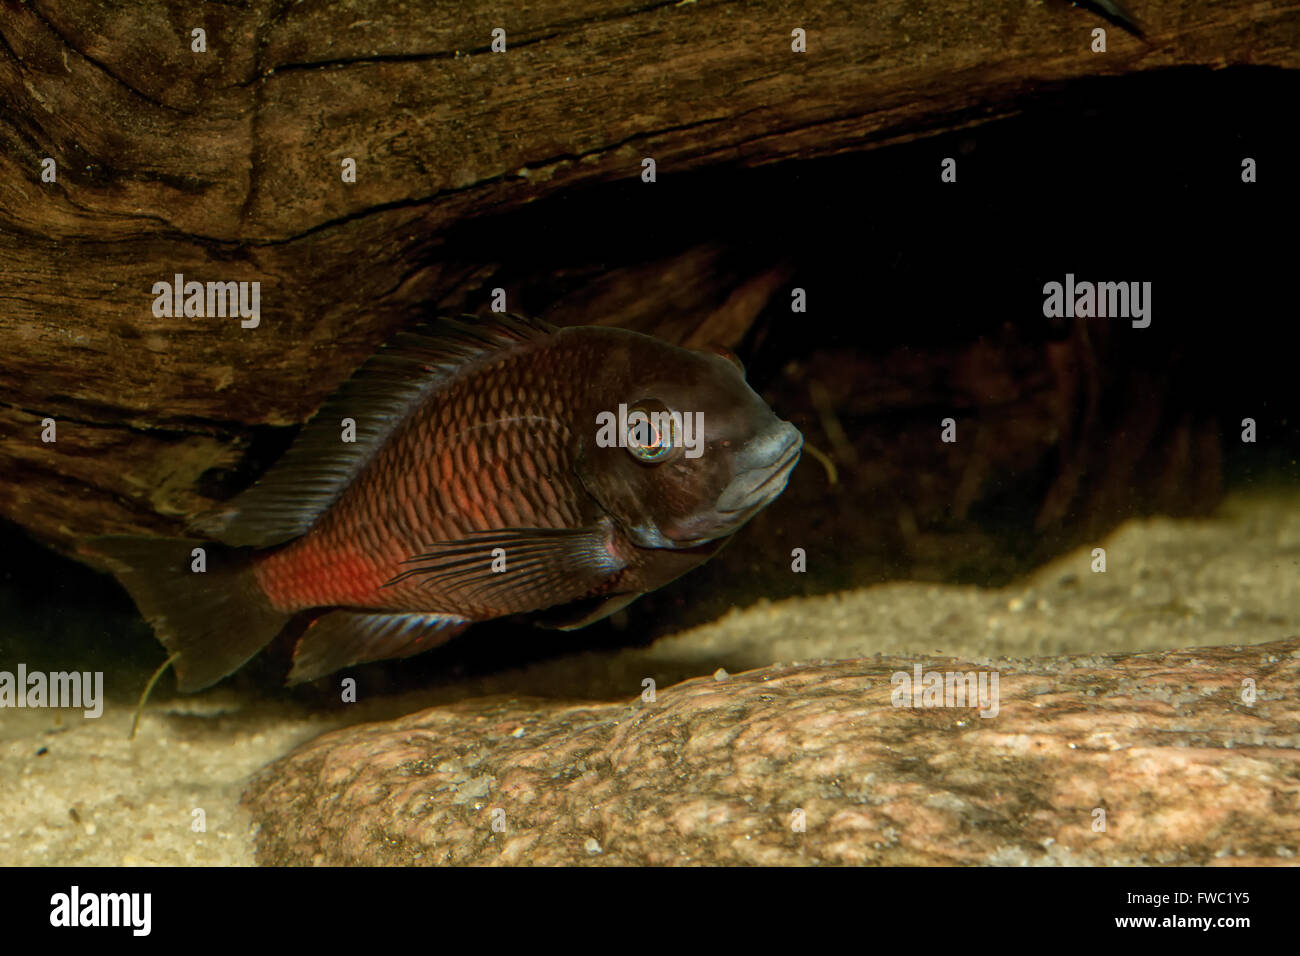 Cichlid fish from genus Tropheus in a aquarium Stock Photo